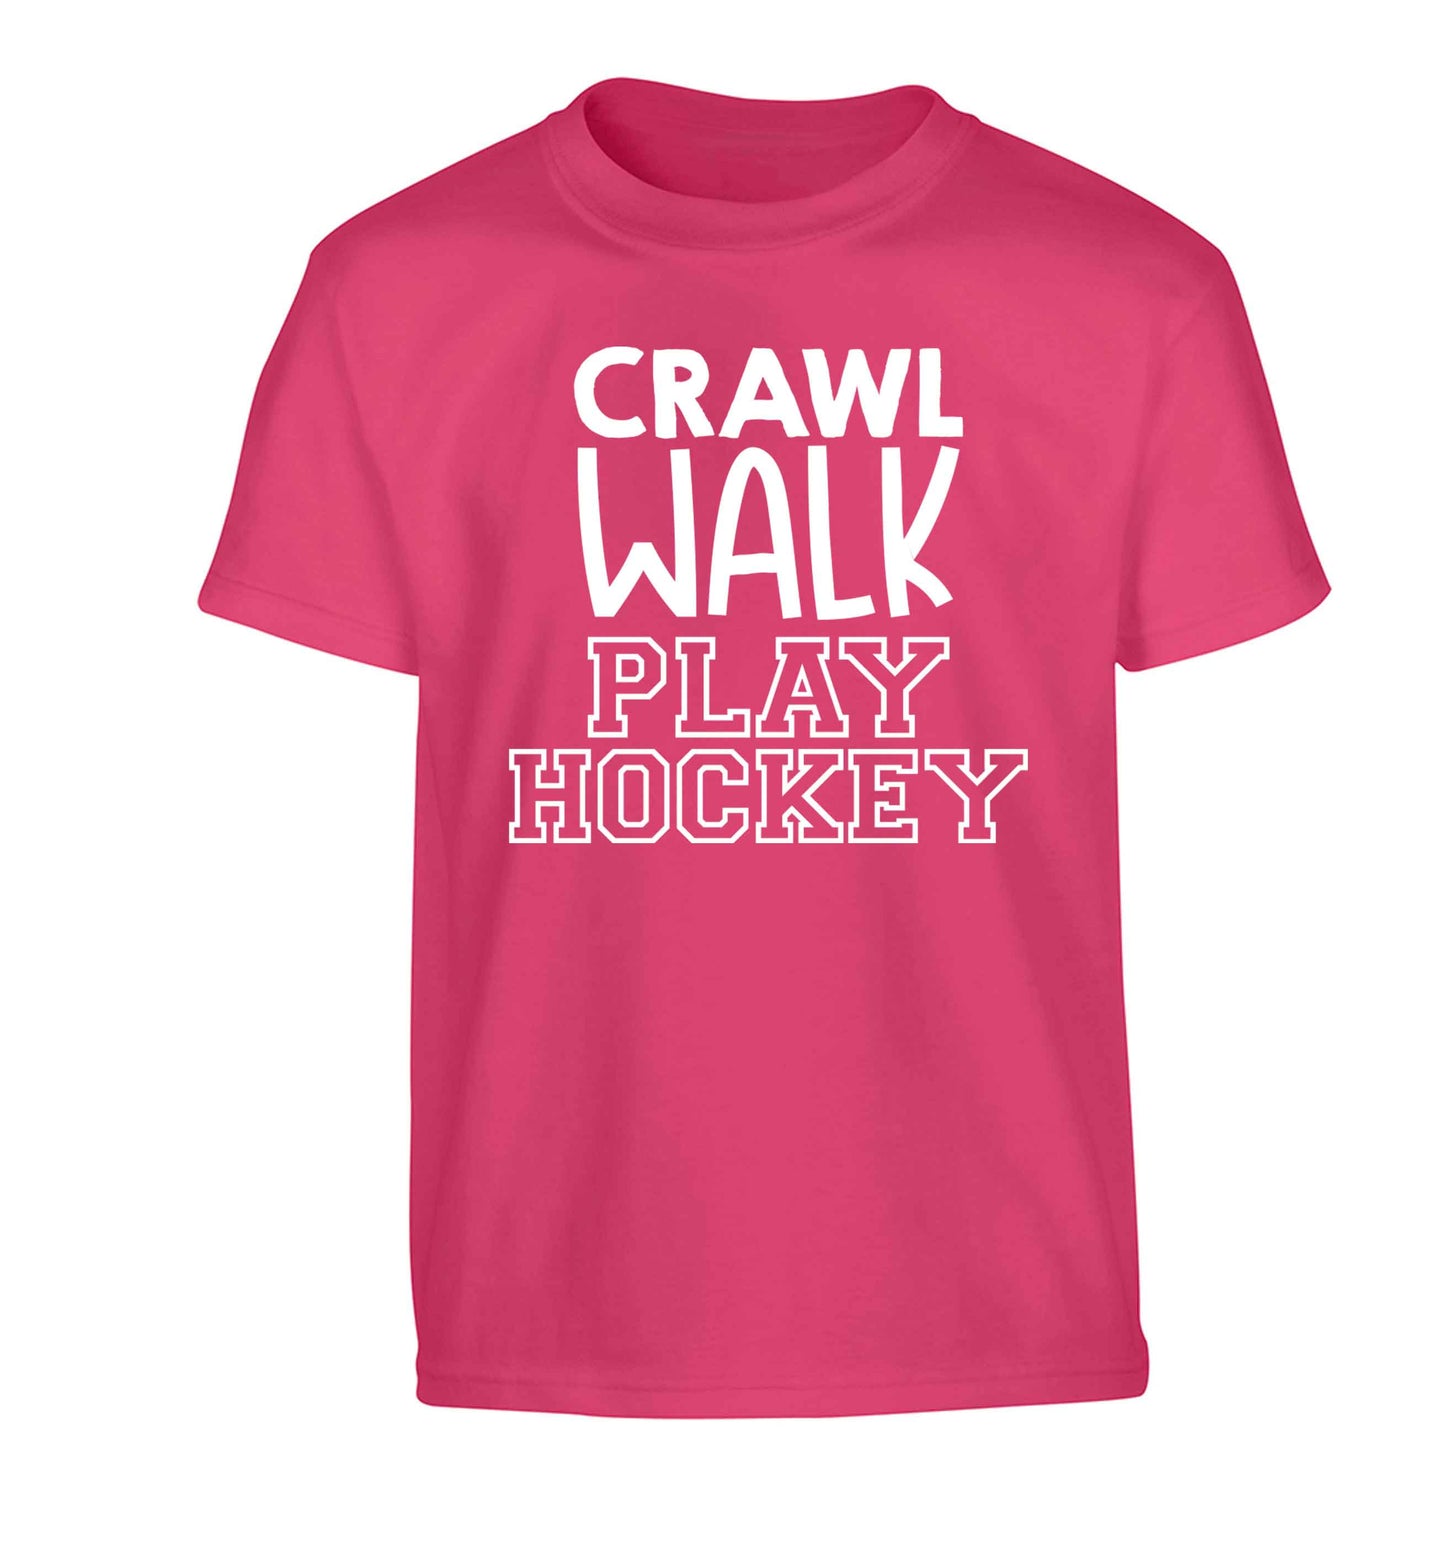 Crawl walk play hockey Children's pink Tshirt 12-13 Years